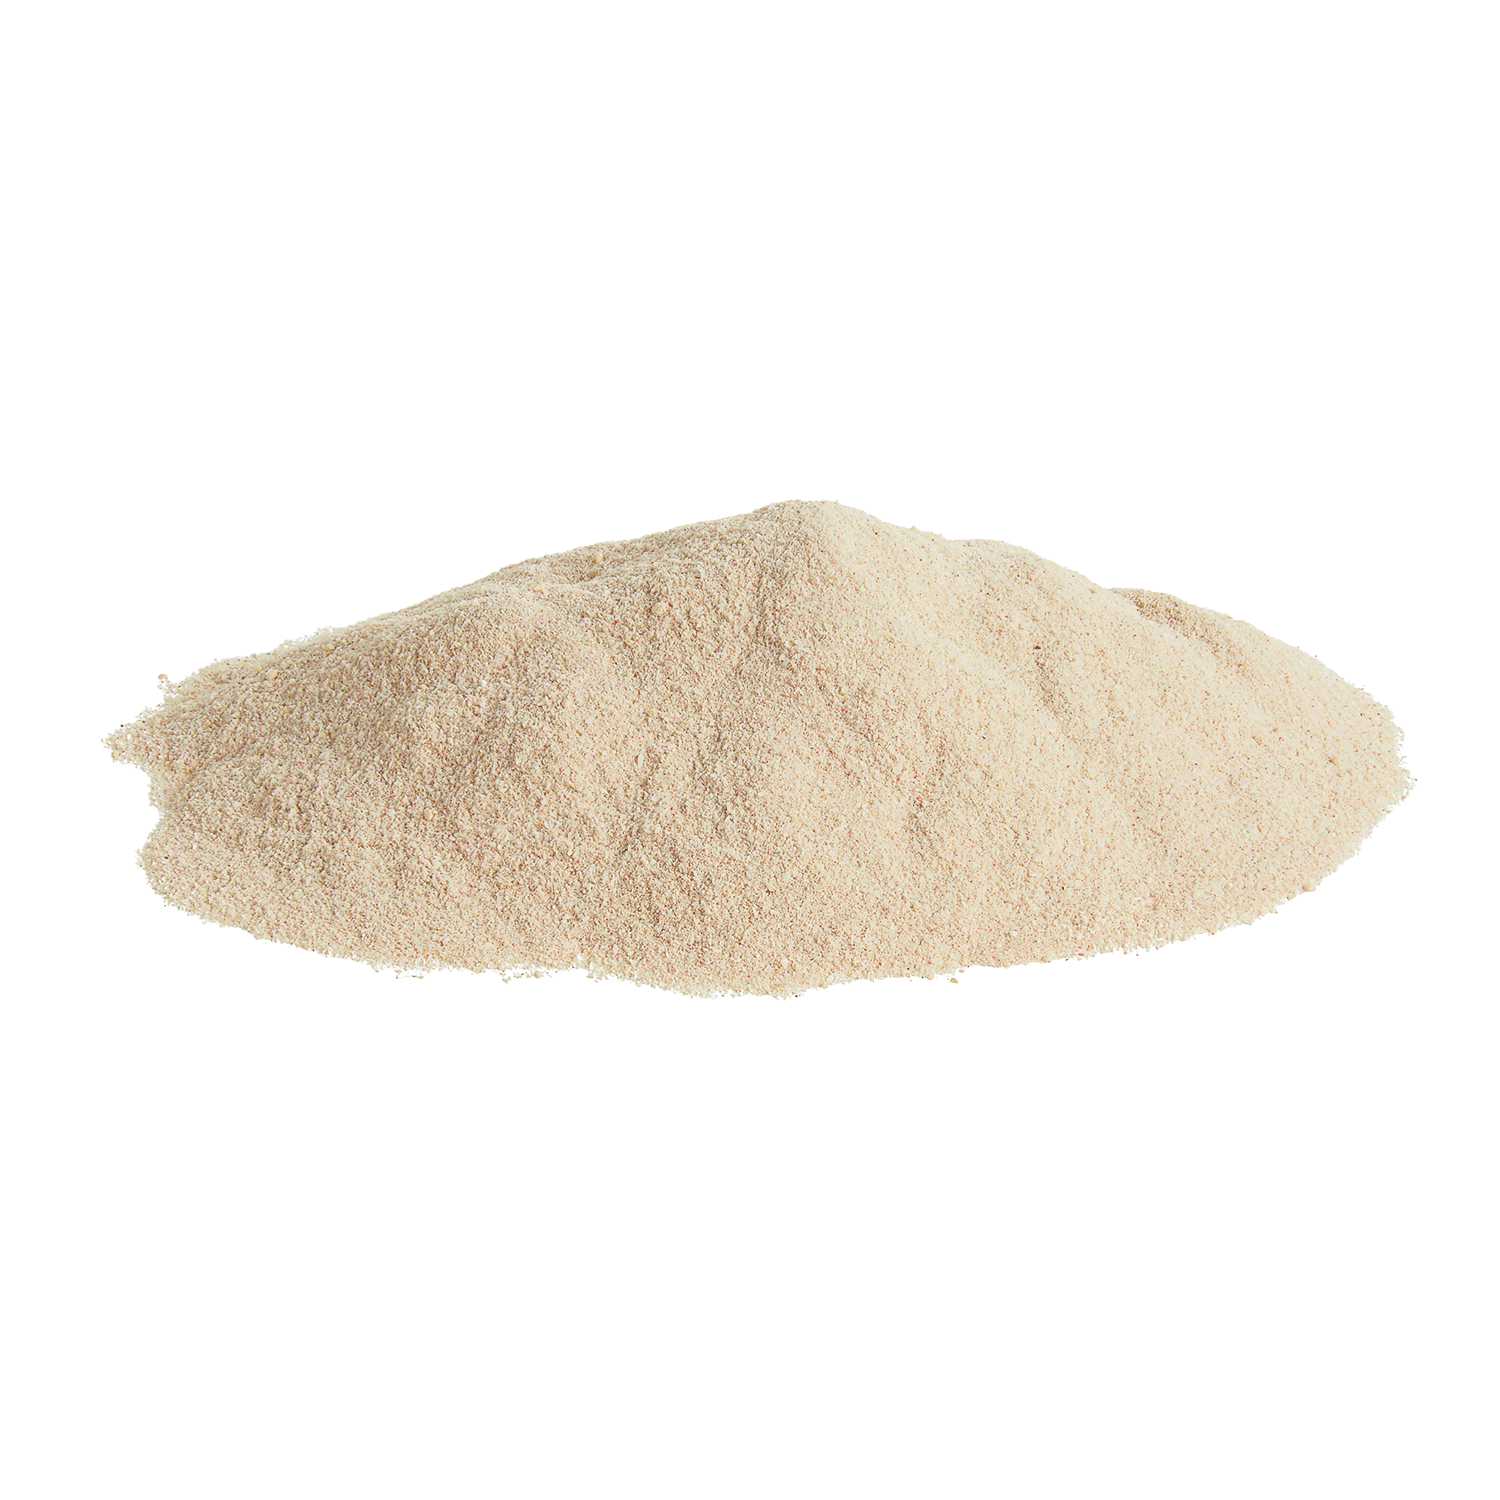 Omega Garlic Powder